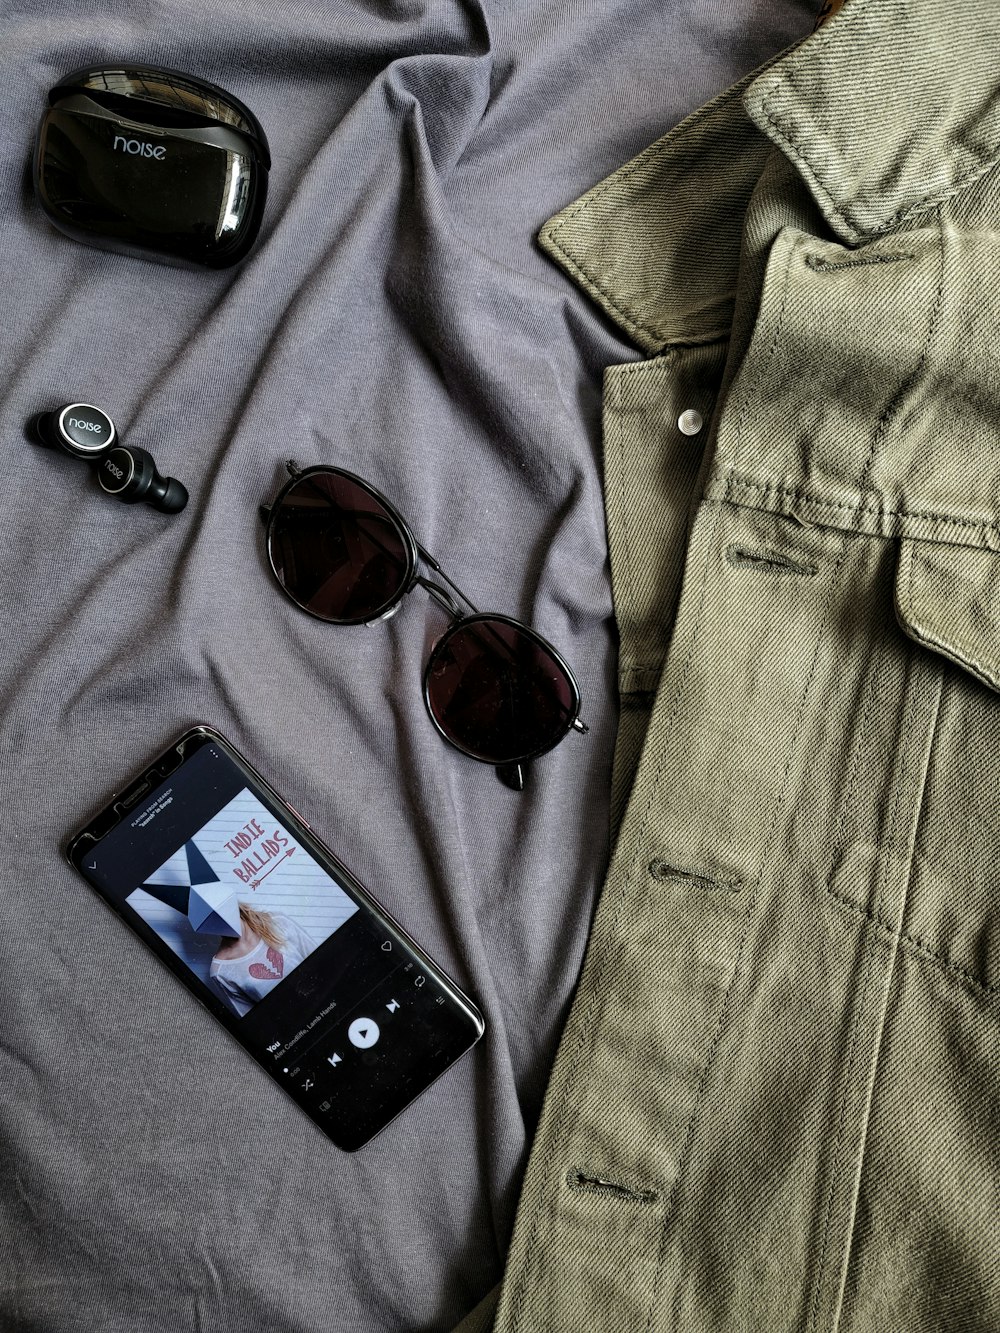 茶色のフレームのサングラスとグレーのデニムのボタンアップシャツの横にある黒いiPhone 4